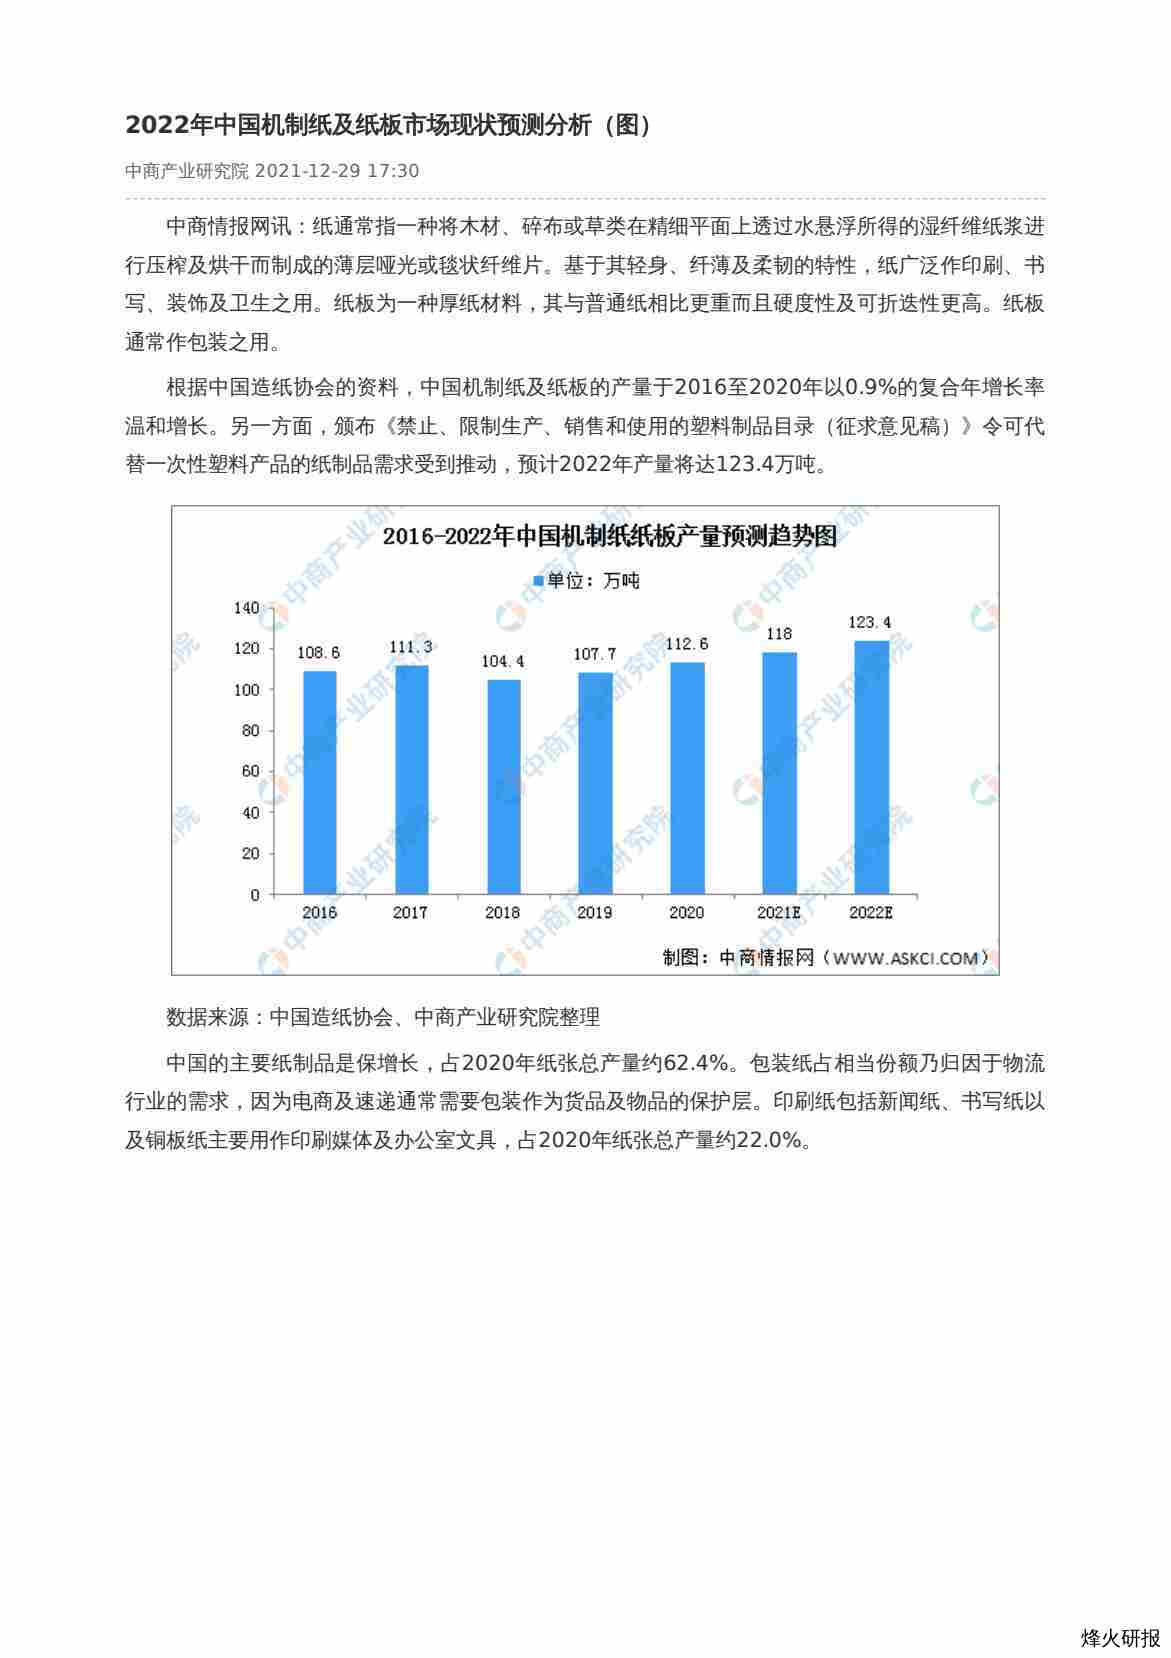 【中商产业研究院】2022年中国机制纸及纸板市场现状预测分析（图）.pdf-第一页